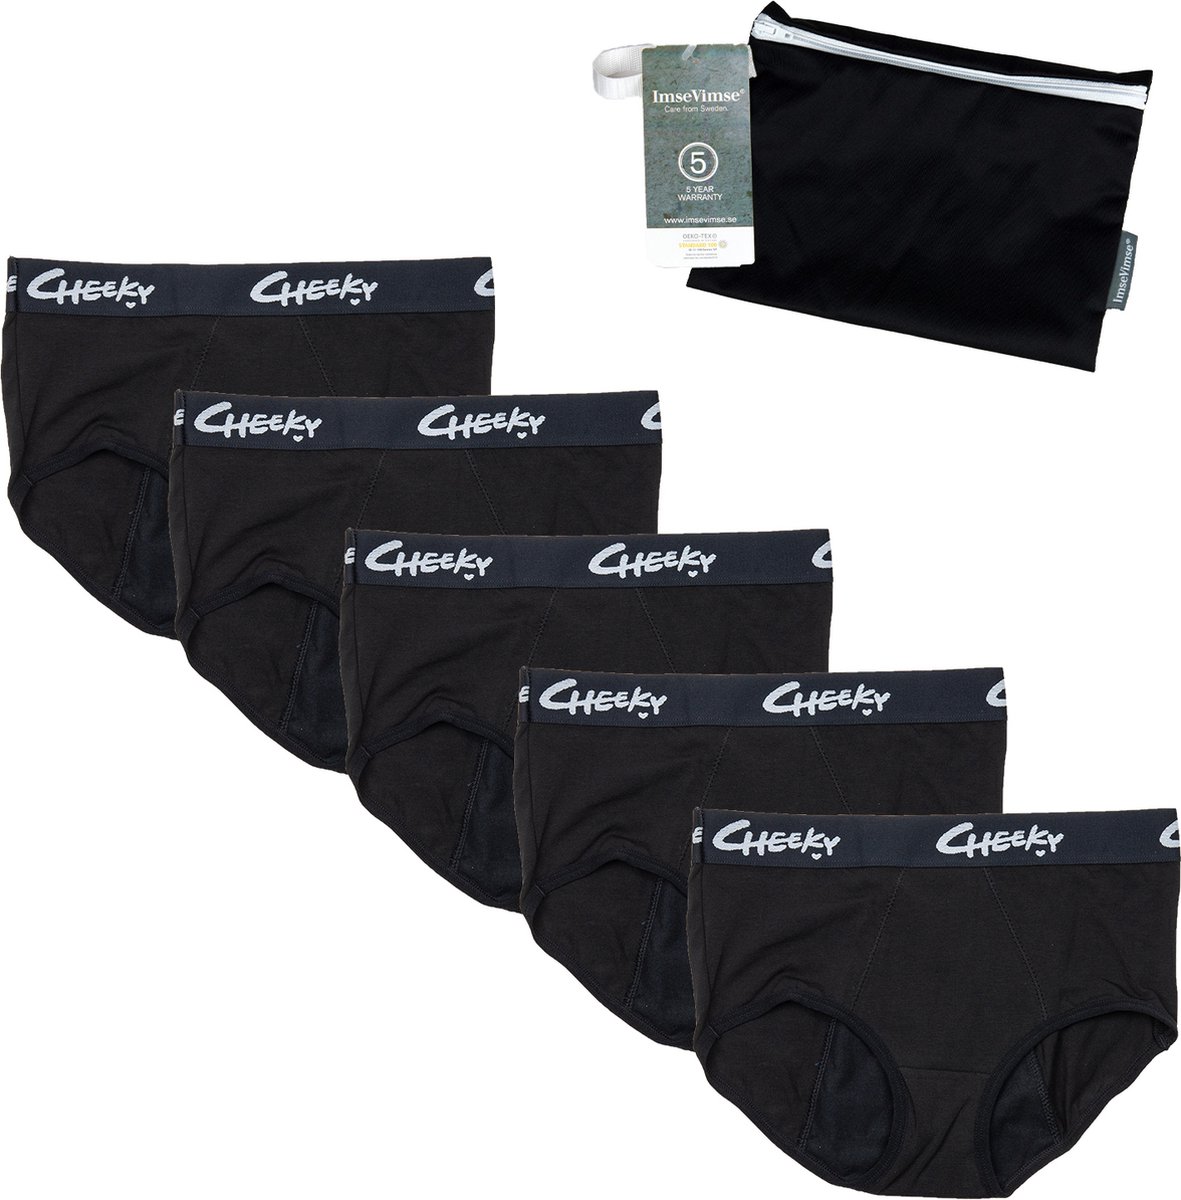 Cheeky Pants Feeling Free - Menstruatie Ondergoed Set van 5 + Wetbag - Extra Absorptie - Comfortabel - Set van 5 - Zero Waste